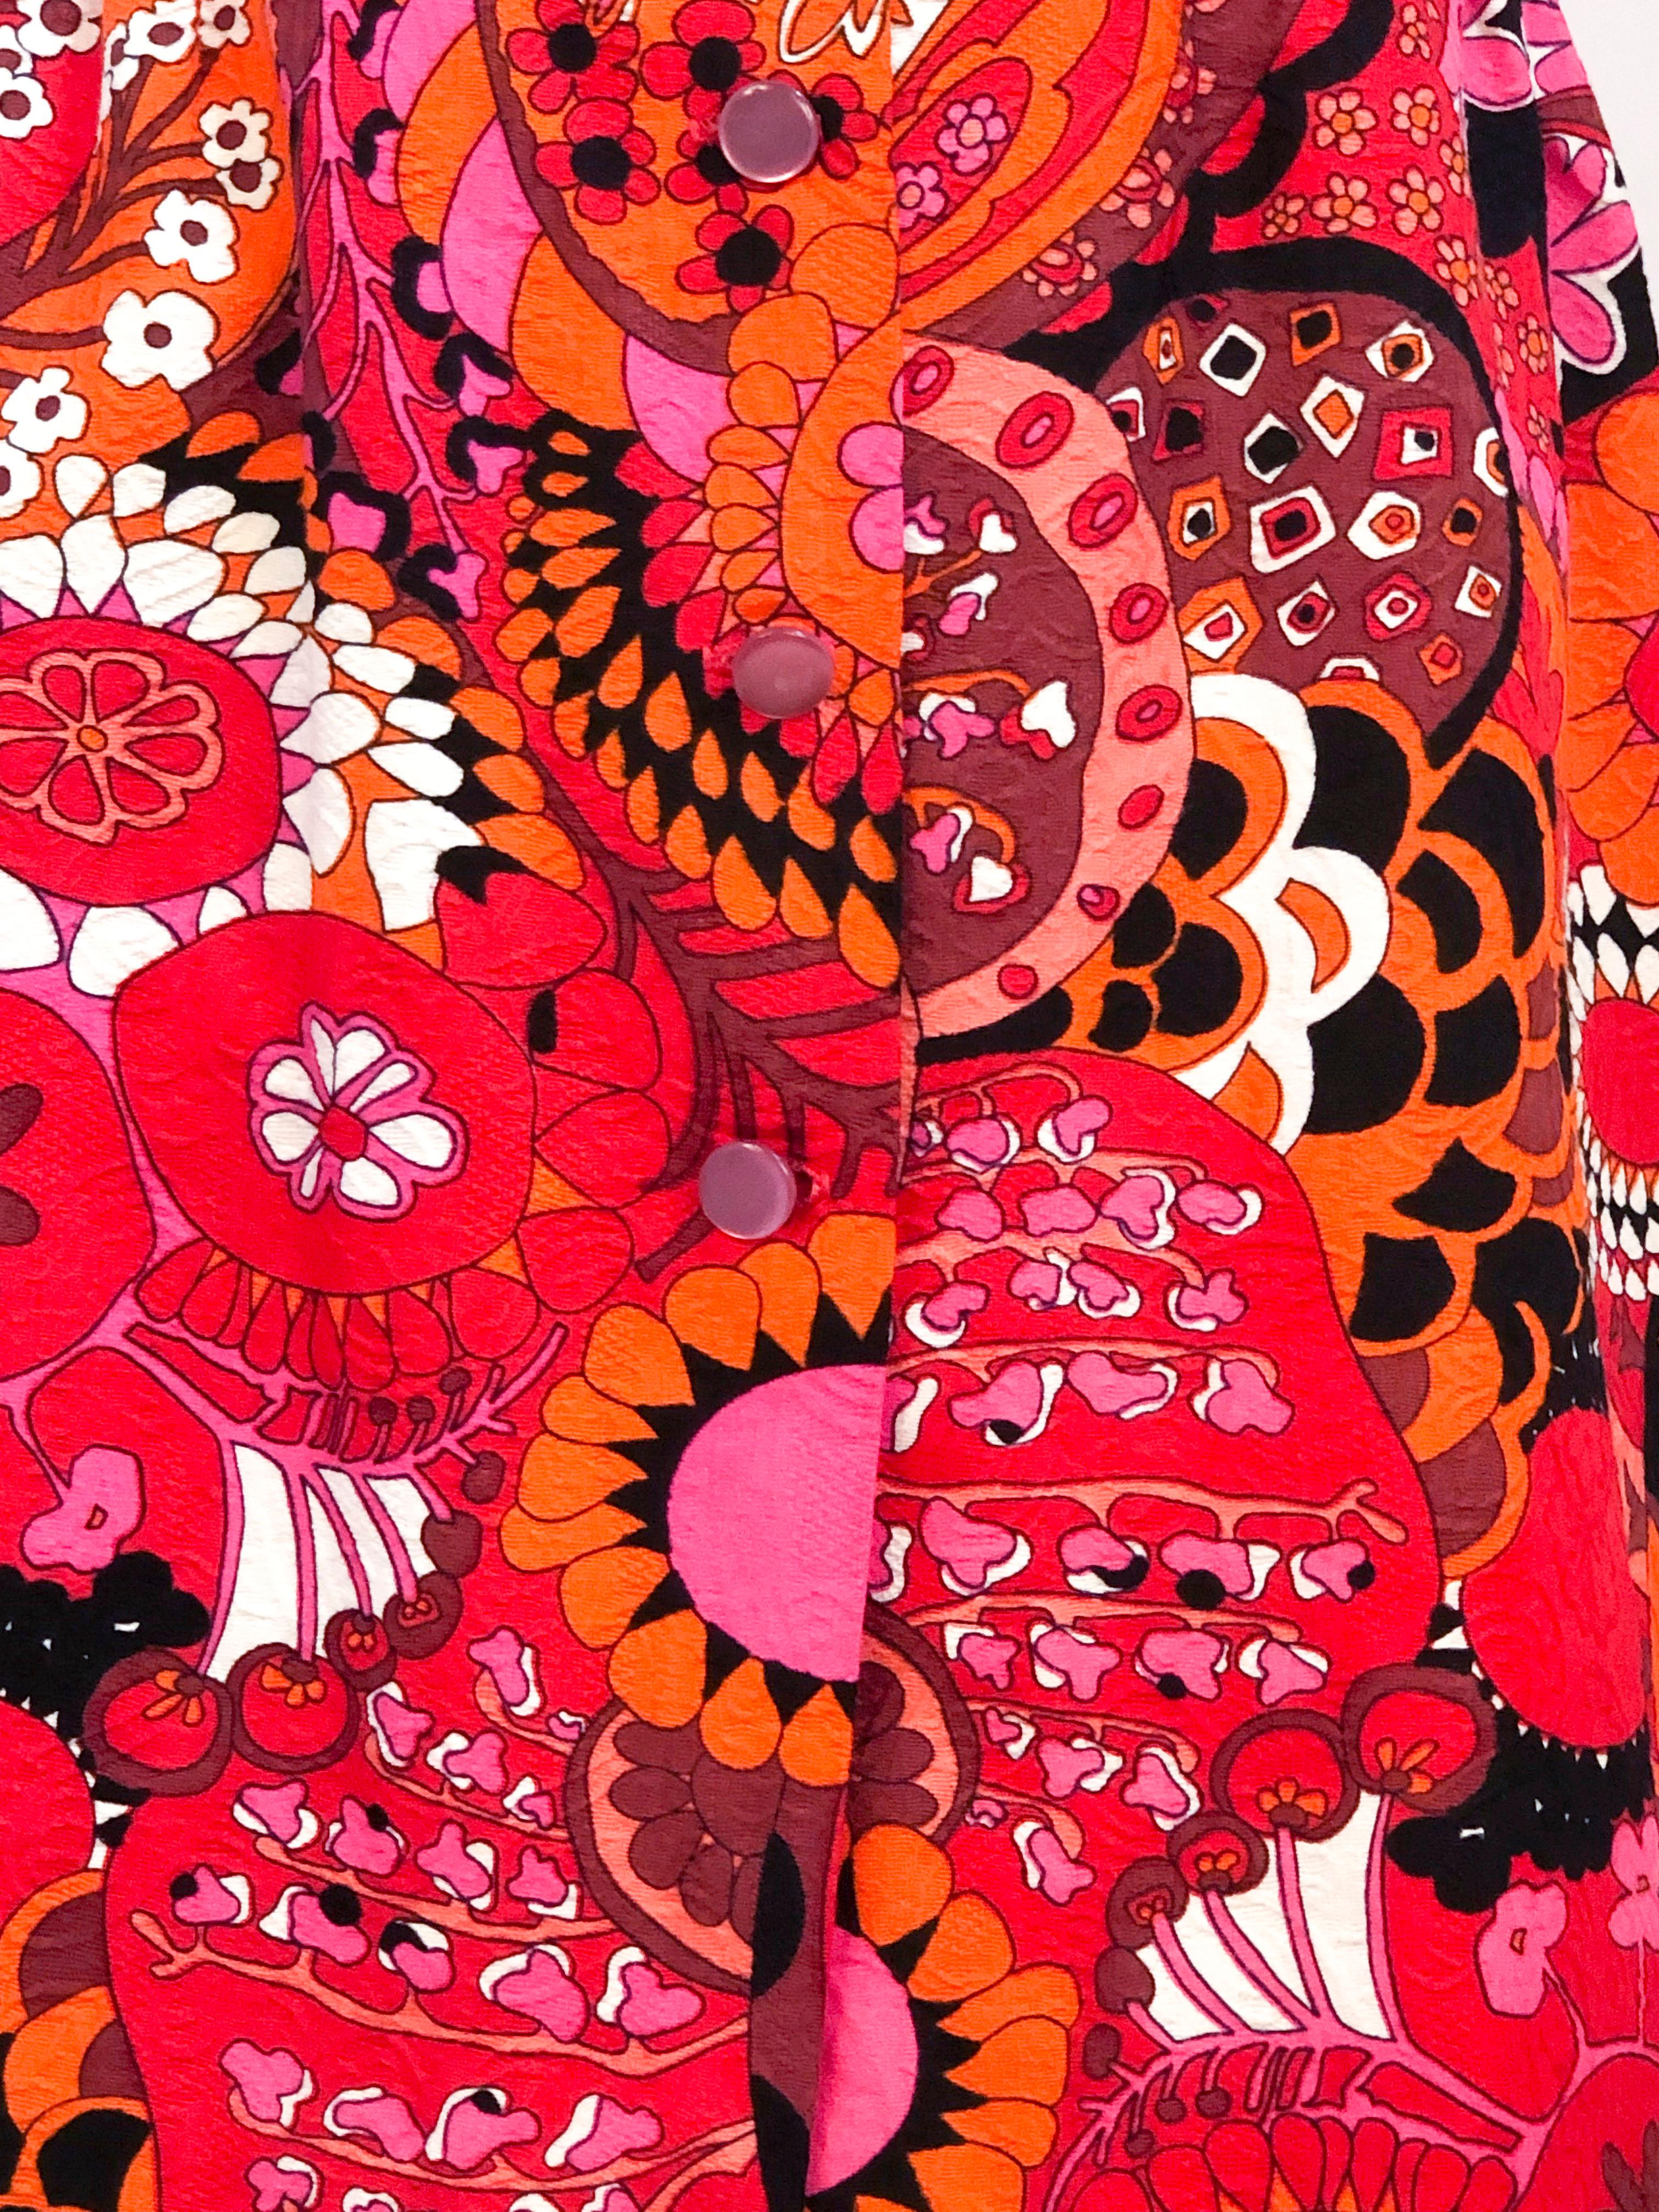 Maillot de bain/soleil imprimé psychédélique de la fin des années 1960 avec des roses, rouges et oranges néon sur un textile jacquard en polyester. Ce maillot de bain/couverture comporte un soutien-gorge intégré pour plus de structure et une